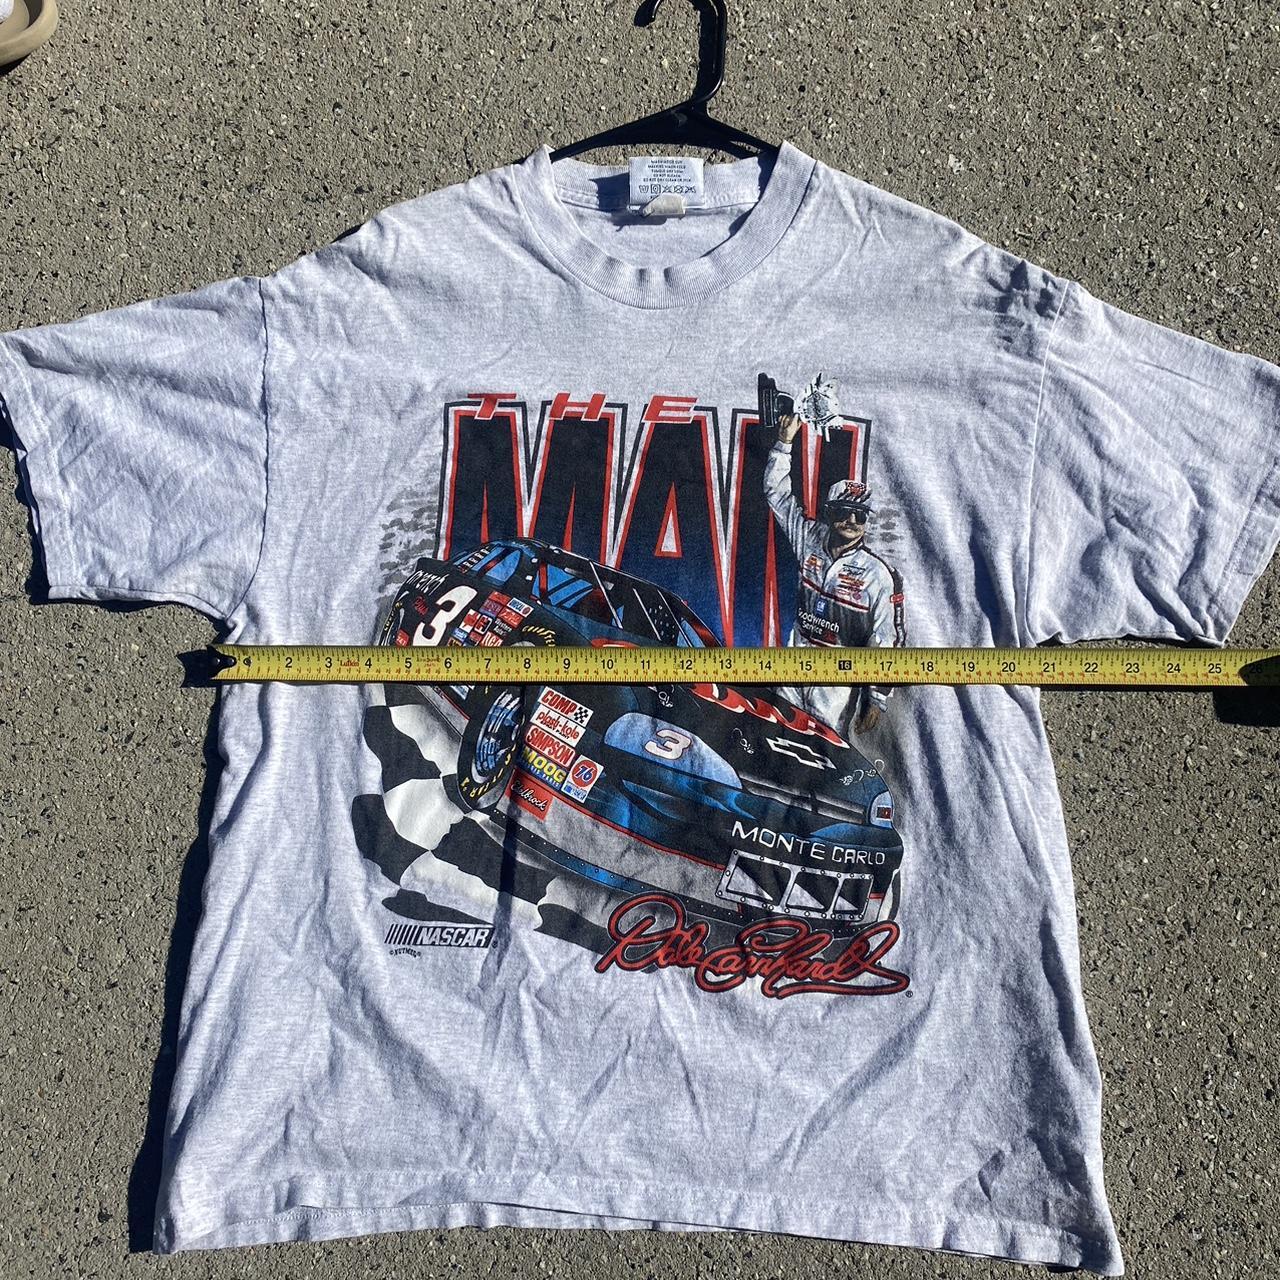 The Man Dale Earnhardt Vintage Nascar T-shirt... - Depop